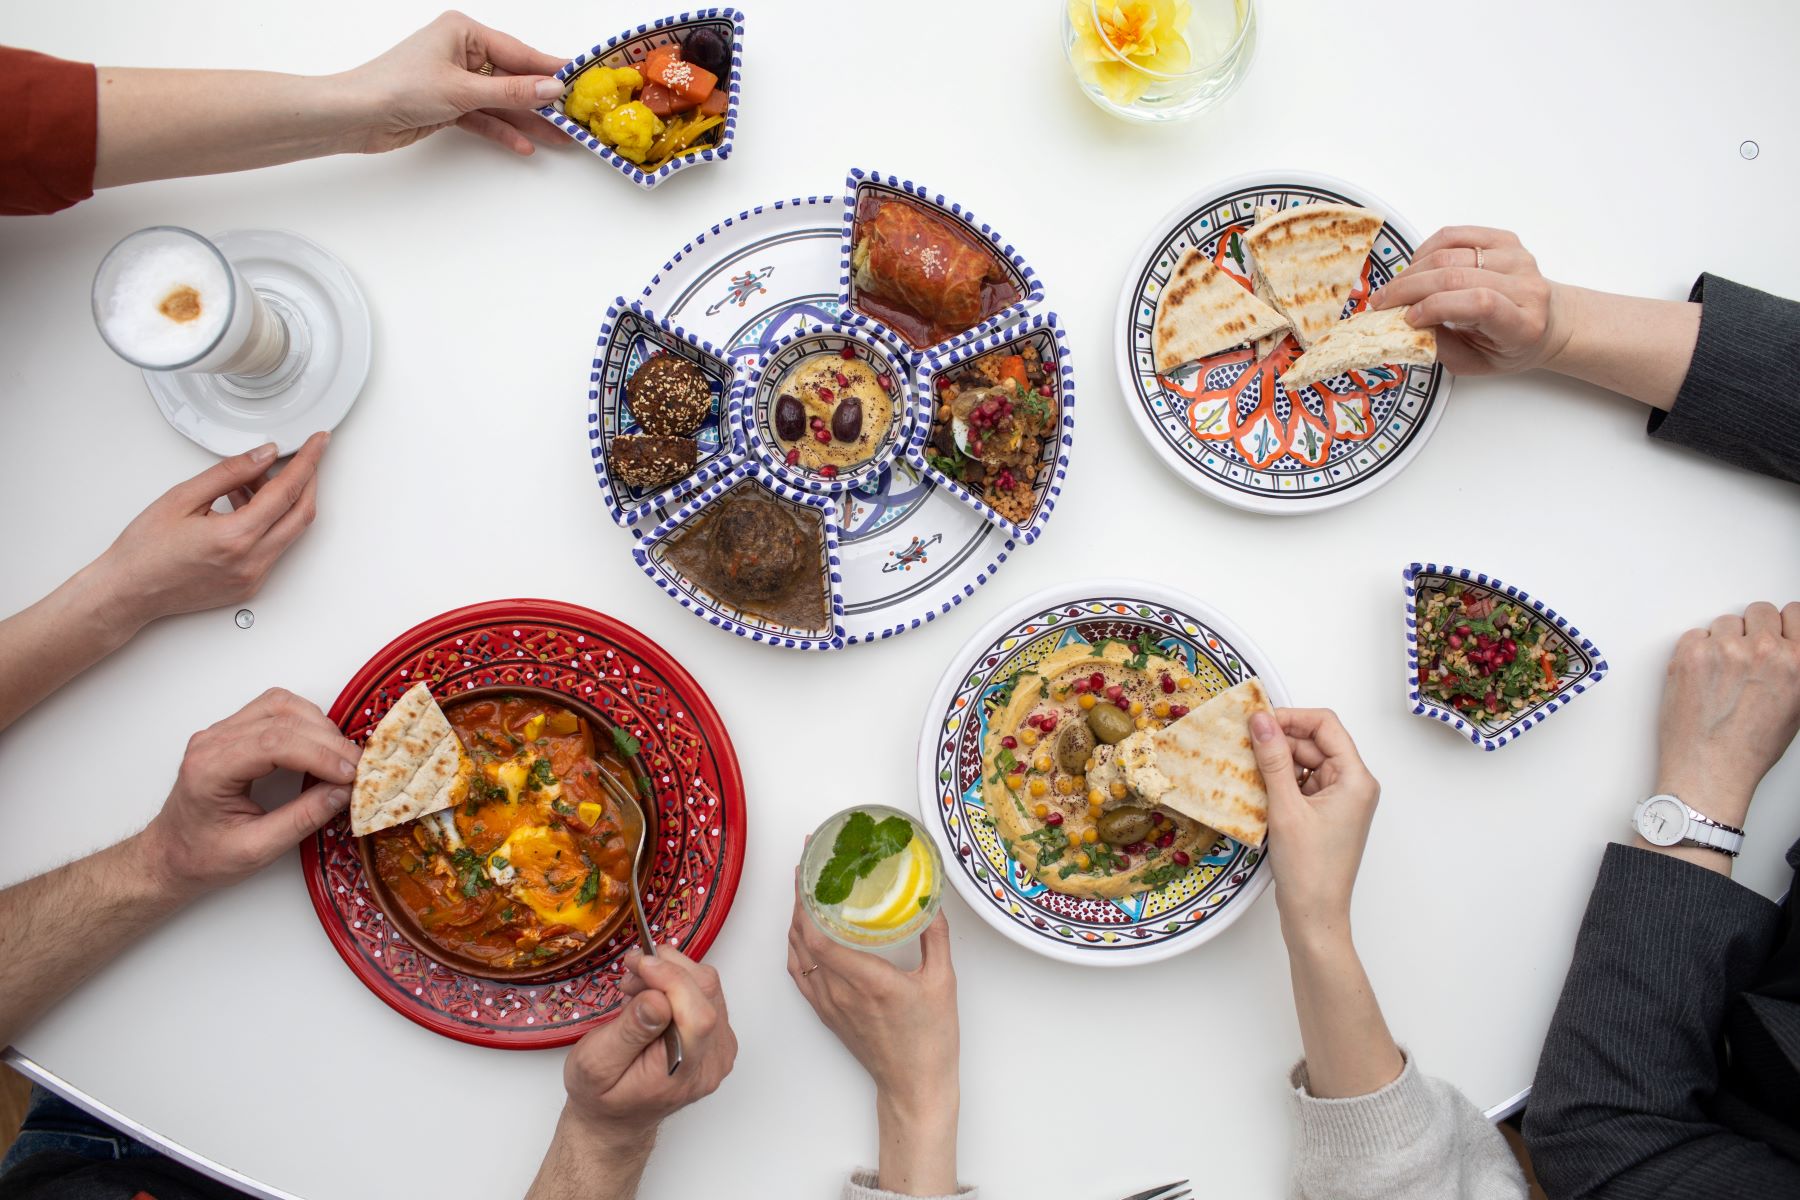 Na stole w miskach stoją potrawy: pita, szakszuka, humus, gołąbki, sałatka izraelska. Kilka osób degustuje potrawy.